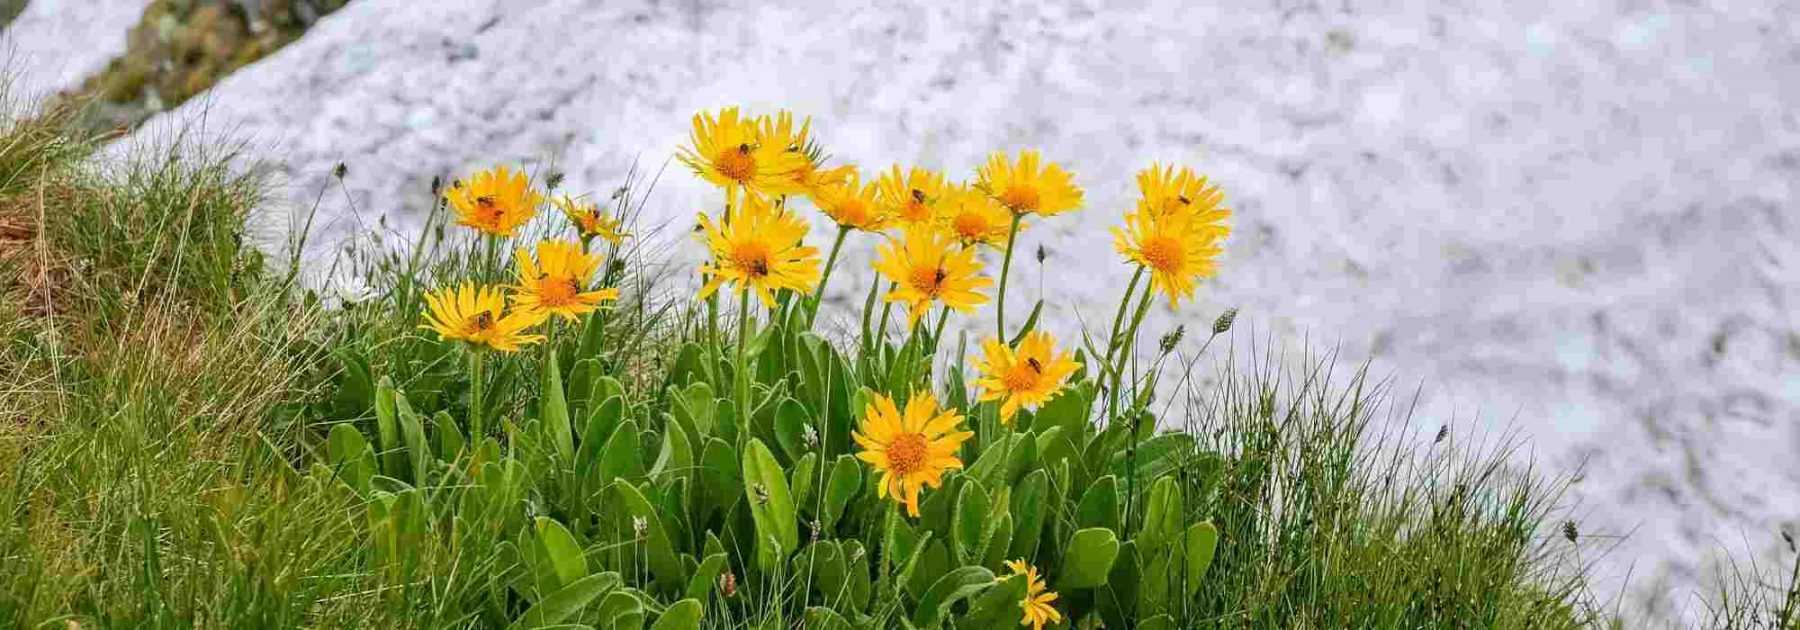 Arnica : récolte, bienfaits et utilisations - Promesse de Fleurs